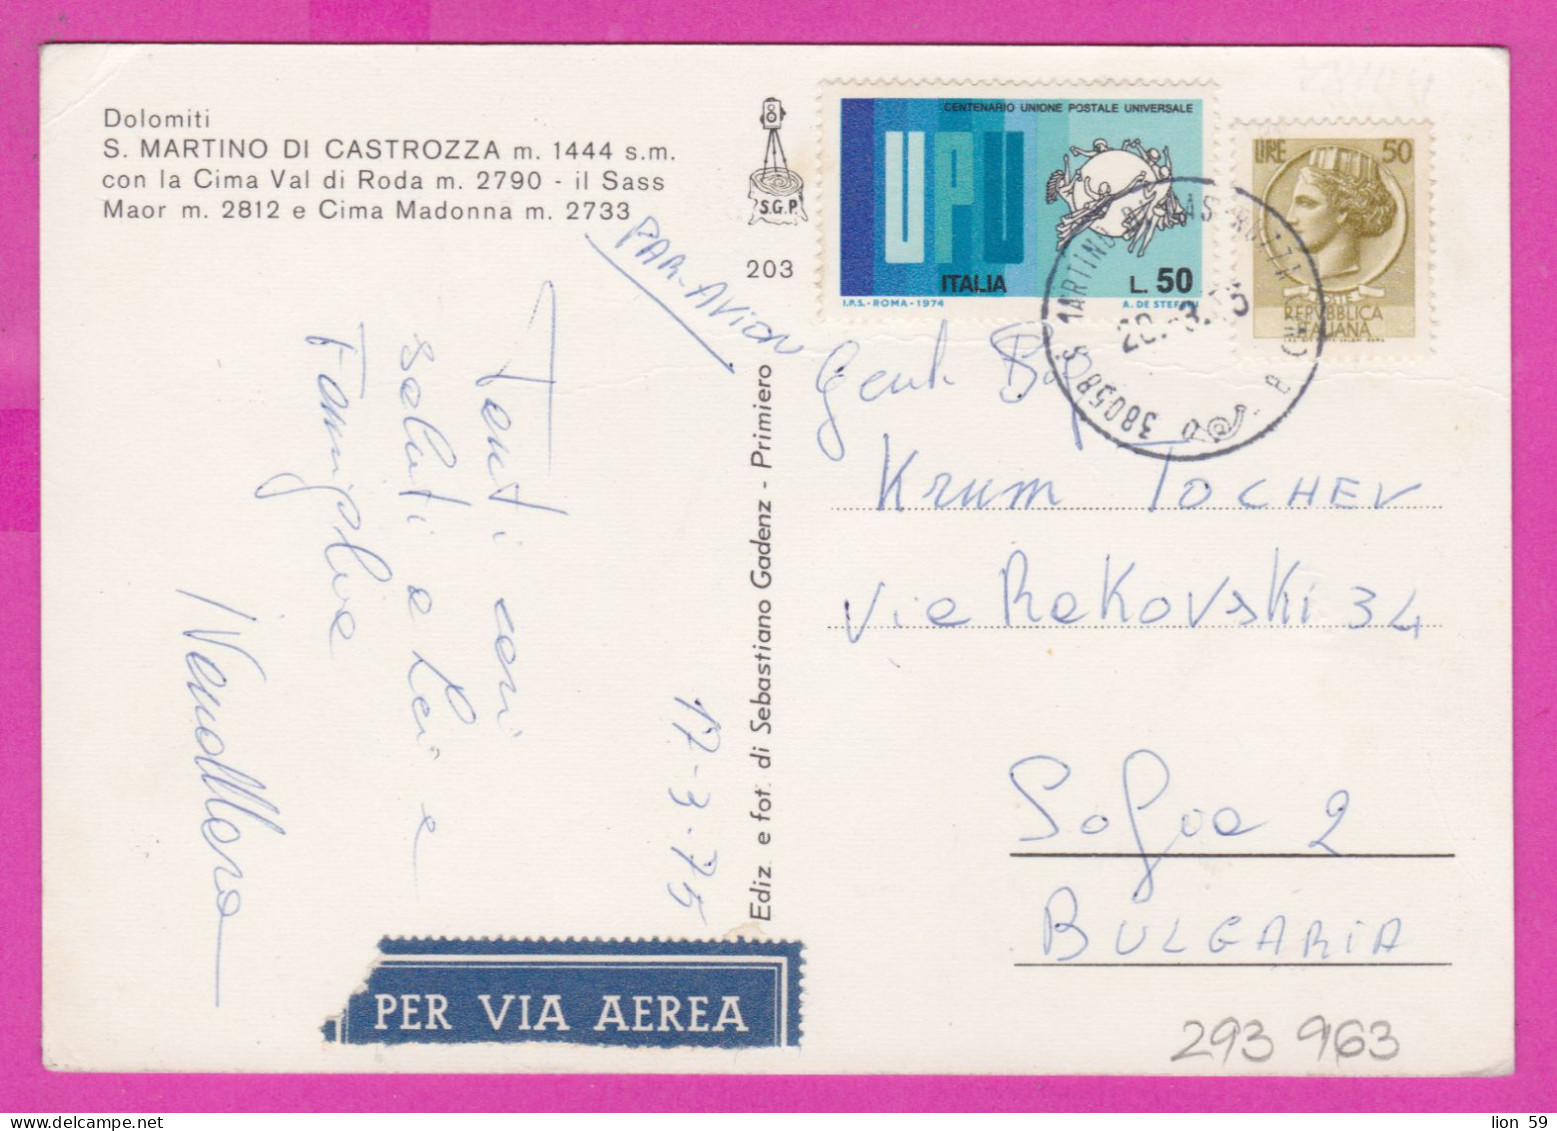 293963 / Italy - Dolomiti S. MARTINO DI CASTROZZA   PC 1975 Per Via Aerea USED 50+50 L Coin Of Syracuse UPU U.P.U. - 1971-80: Marcophilia